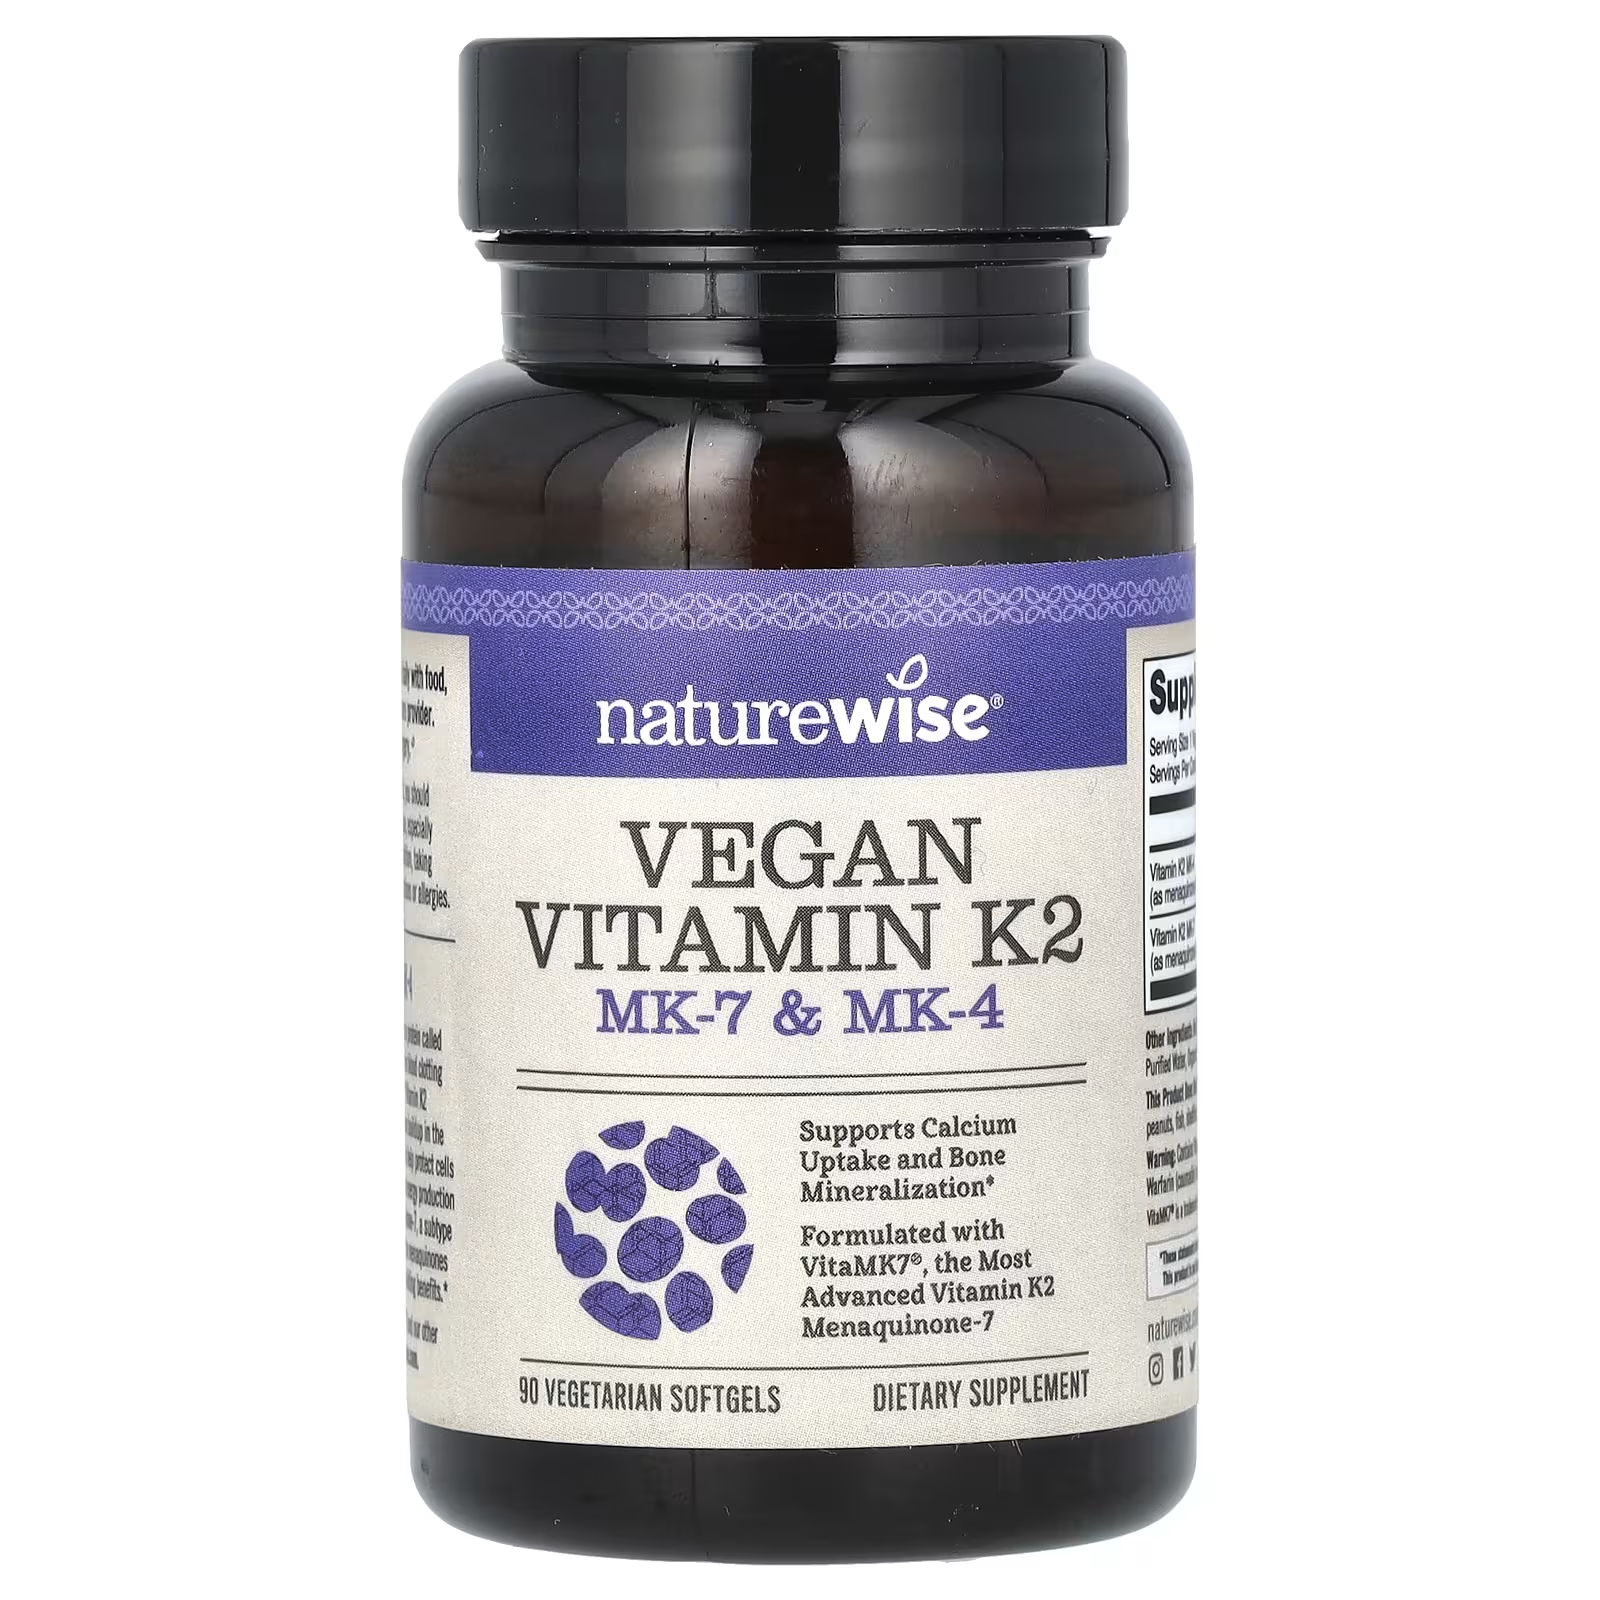 NatureWise Веганский витамин K2 MK-7 и MK-4, 90 вегетарианских мягких таблеток solaray витамин k2 тройной силы действия менахинон 7 150 мкг 30 растительных капсул